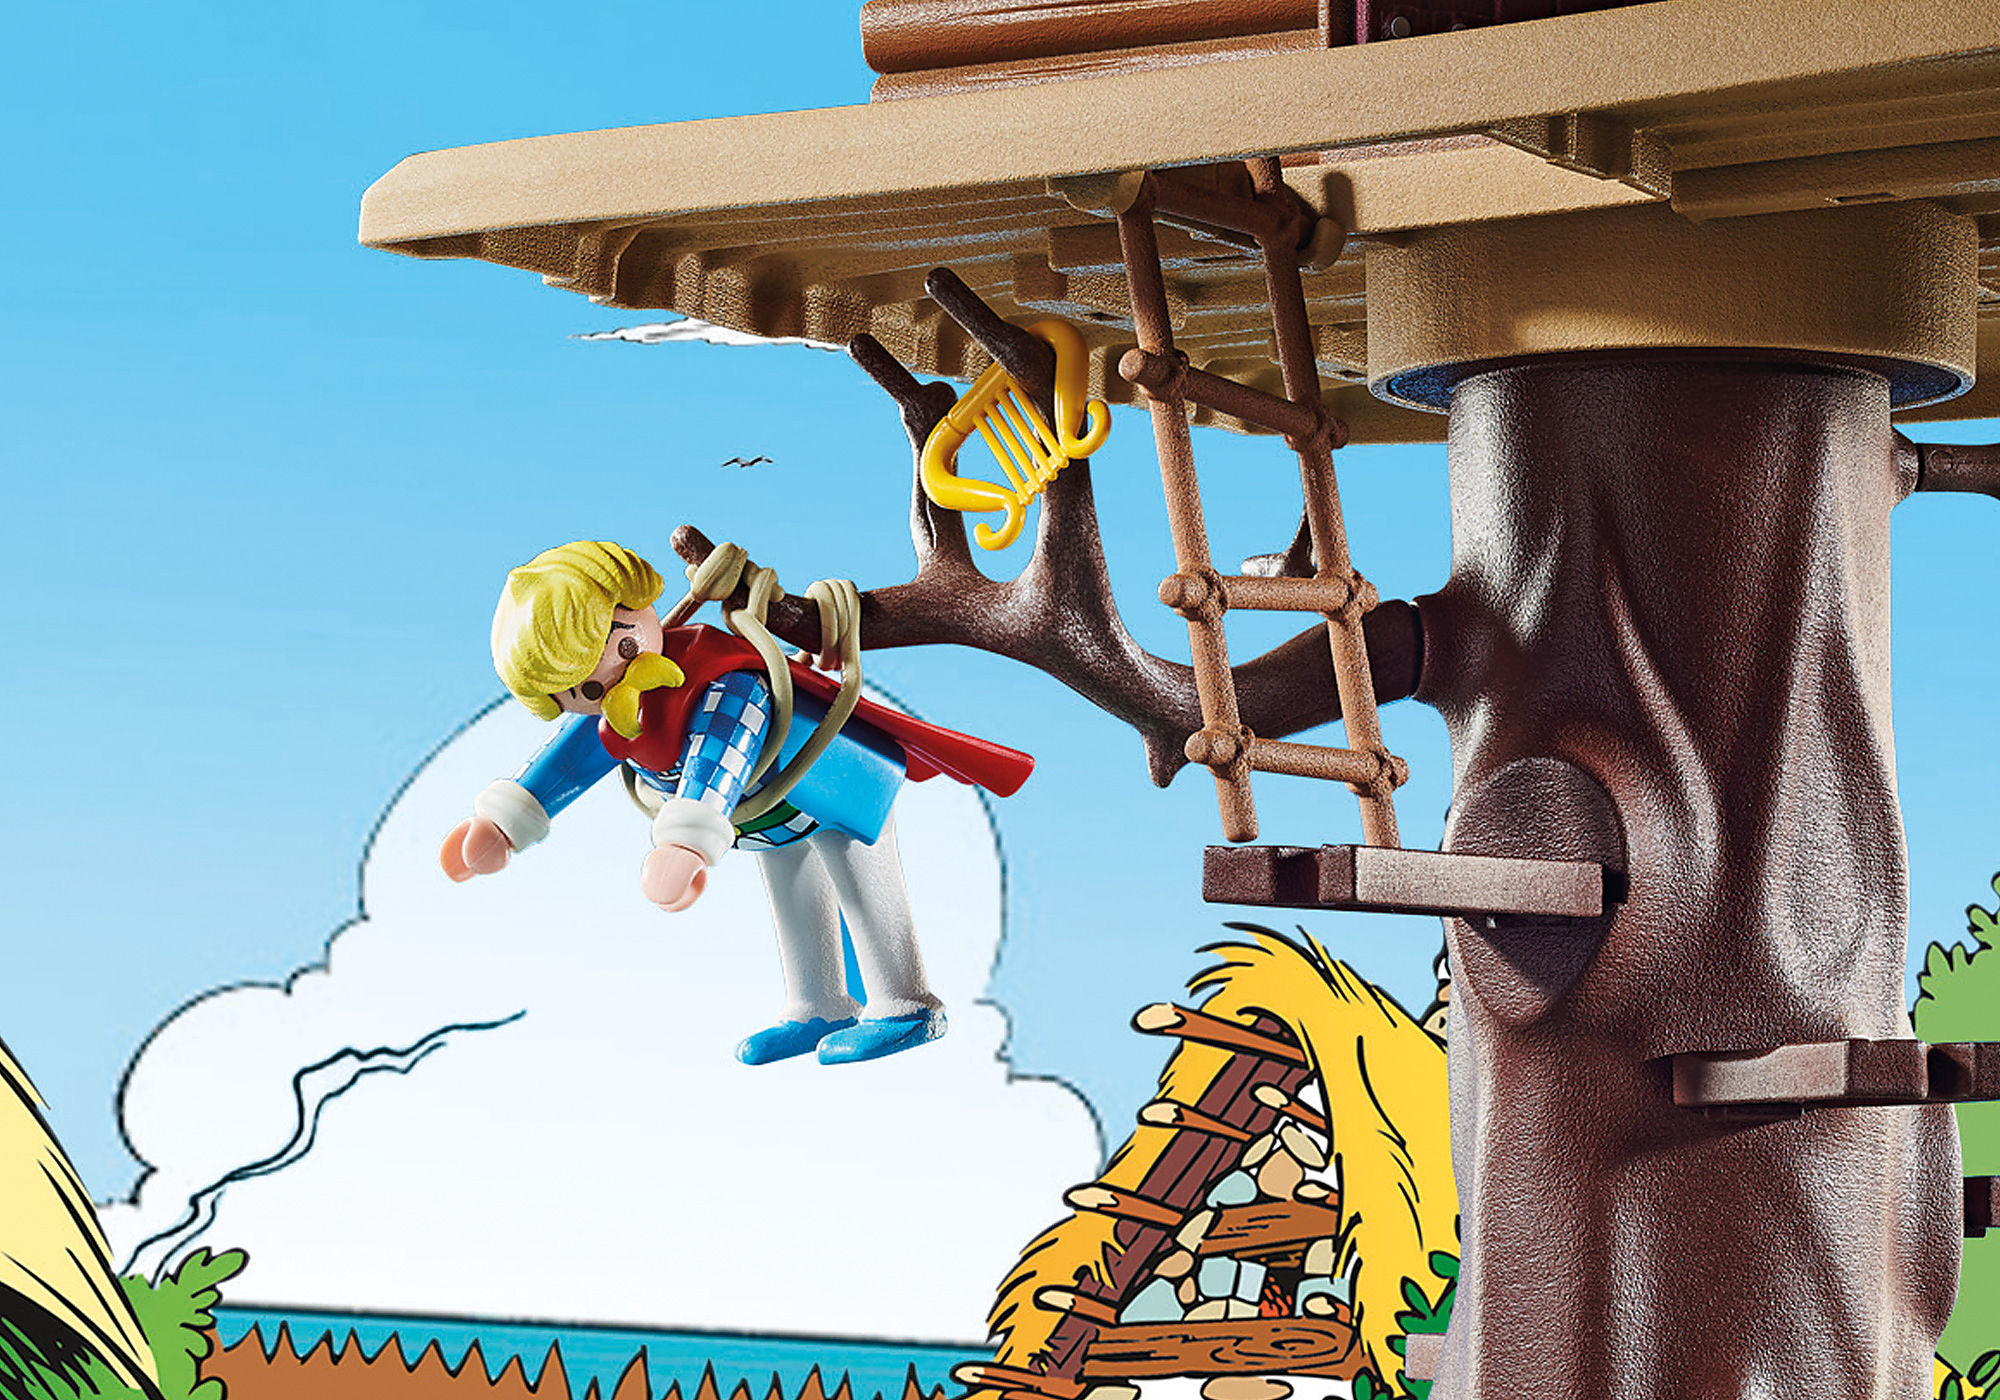 Playmobil collection Astérix et Obélix, la hutte d'Assurancetourix